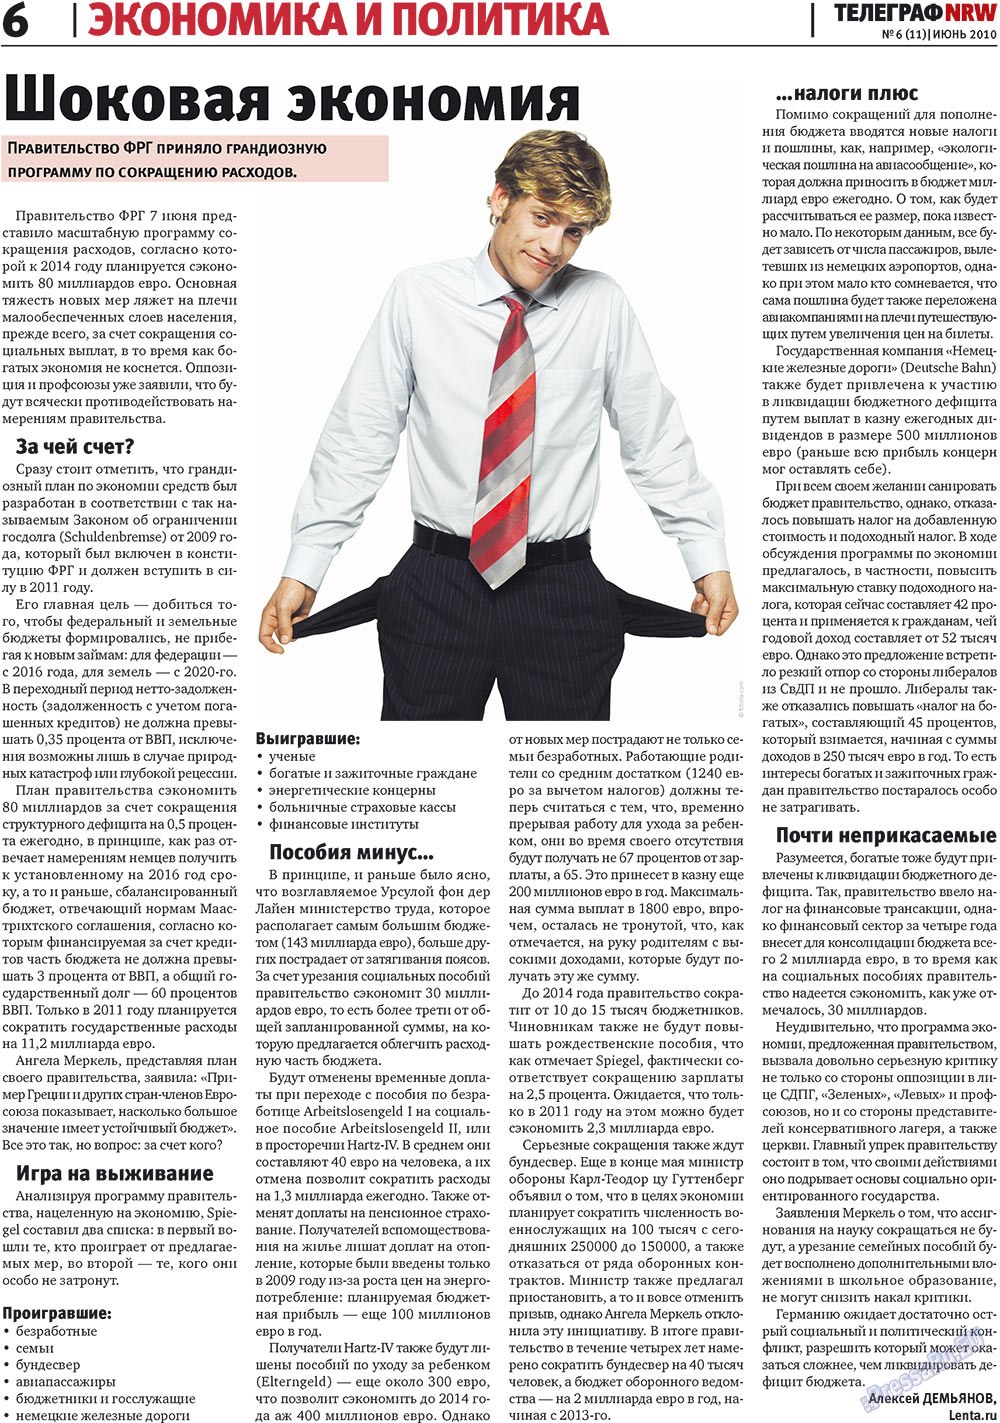 Телеграф NRW (газета). 2010 год, номер 6, стр. 6